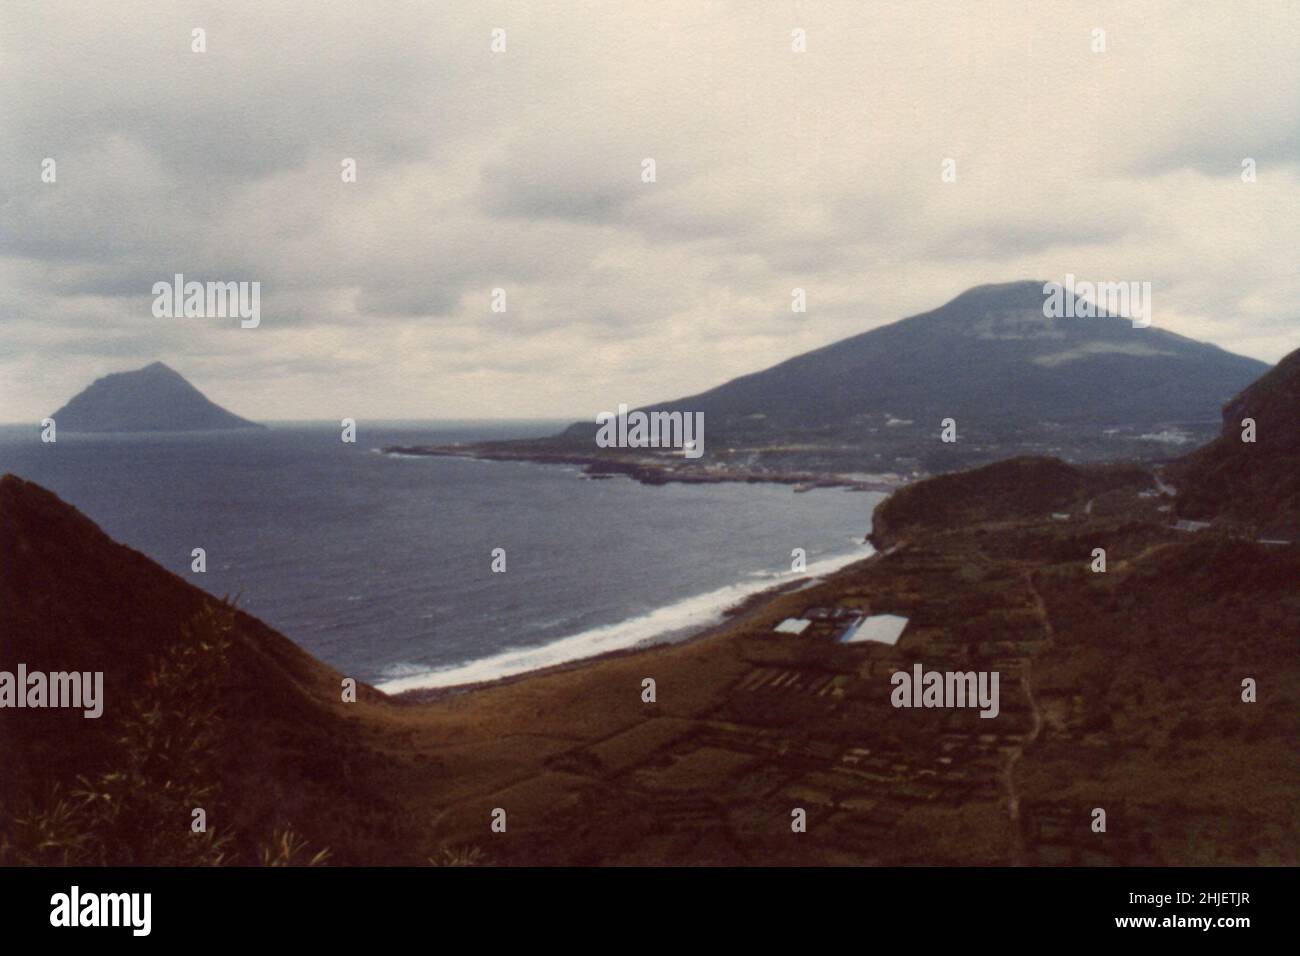 Scanned Copy of Archival Photo Japan Landscape Stock Photo